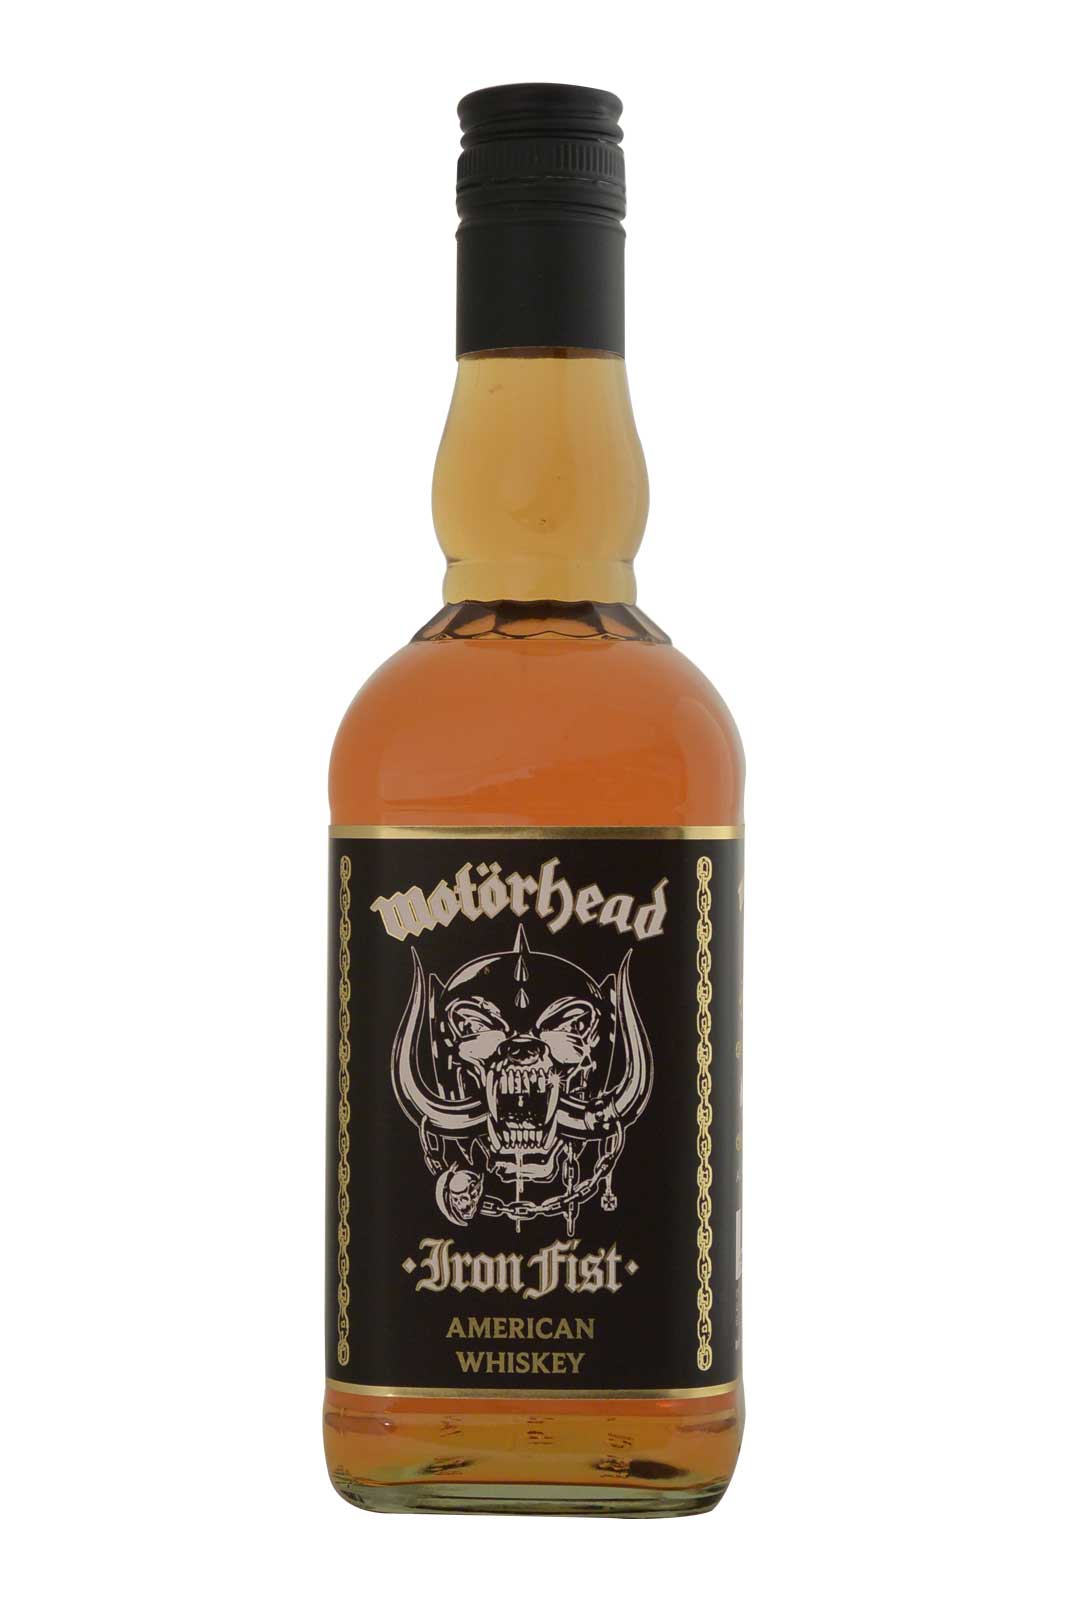 Motörhead Iron Fist American Whisky